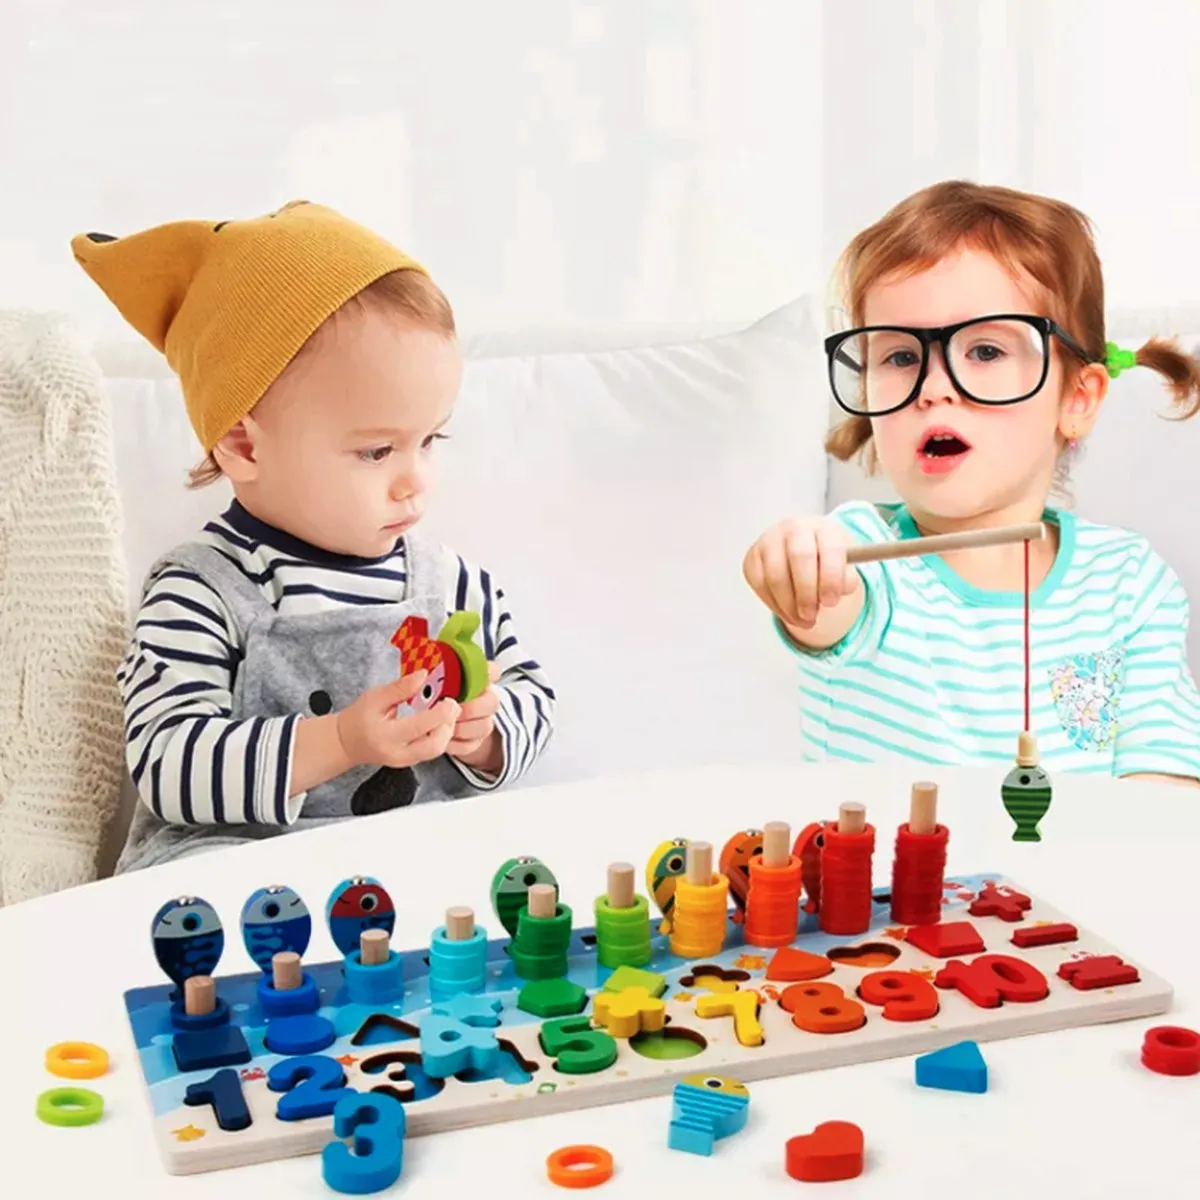 Smartgames voor kinderen - Spelend leren - Educatief speelgoed - Montessori speelgoed - Montessori voor thuis - Educatief speelgoed 4 jaar - Speelgoed jongens en meisjes - Rekenspelletjes speelgoed